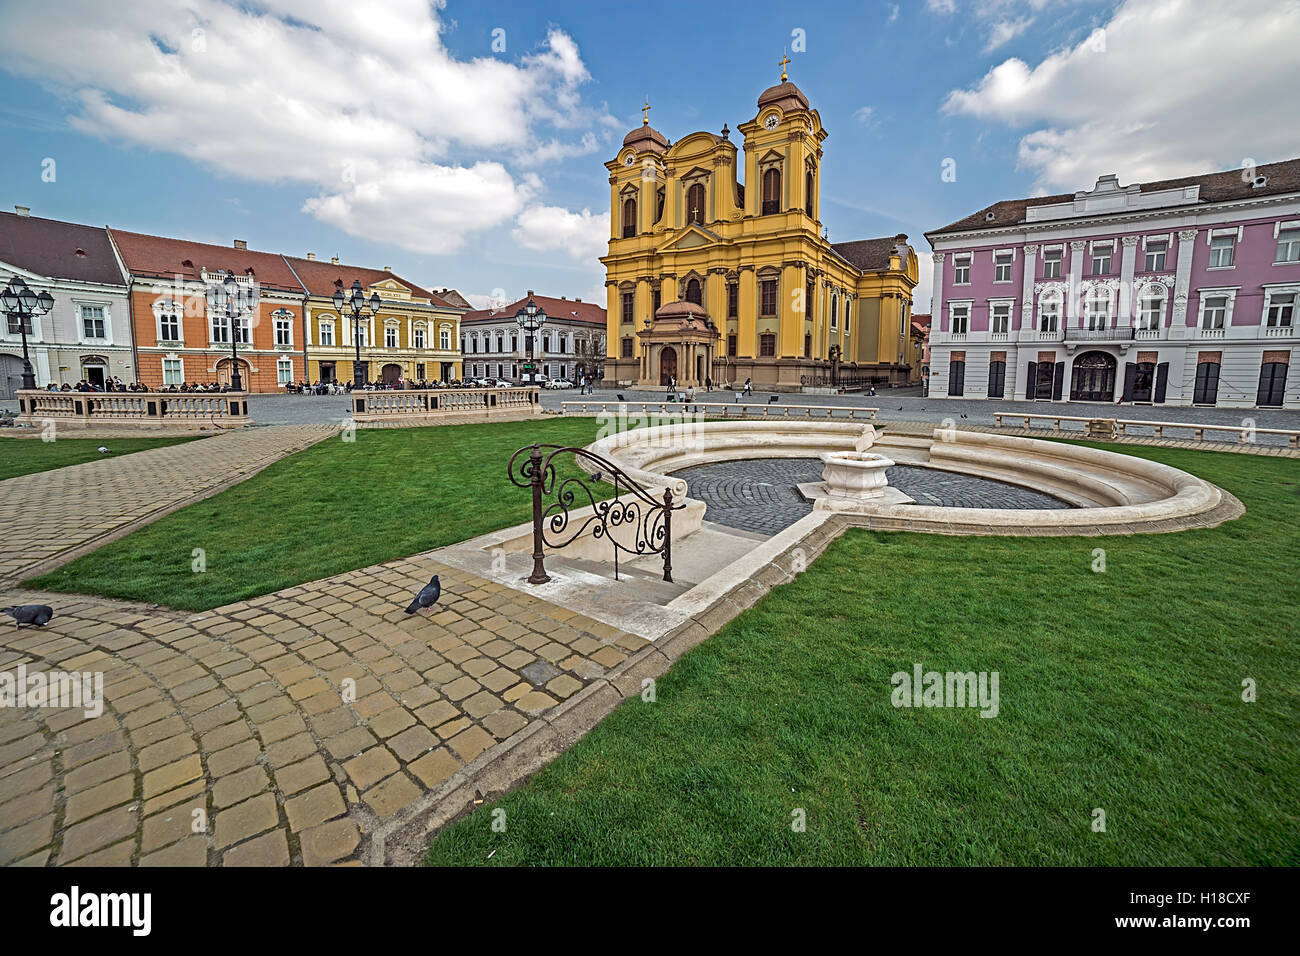 TIMISOARA, Romania - 18 Marzo 2016: vista di una parte di Union Square in Timisoara, Romania, con edifici vecchi Foto Stock